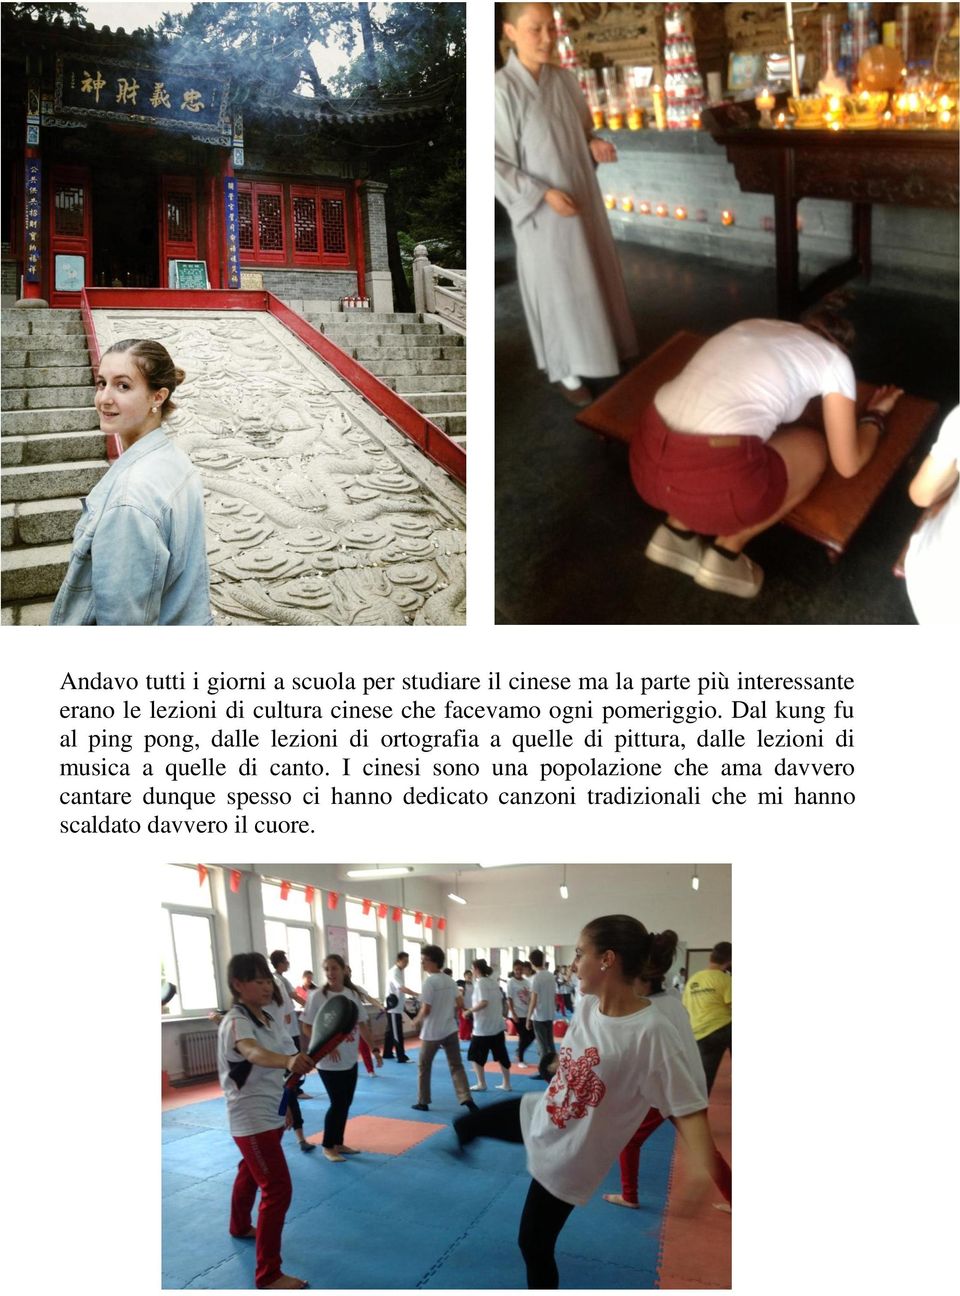 Dal kung fu al ping pong, dalle lezioni di ortografia a quelle di pittura, dalle lezioni di musica a